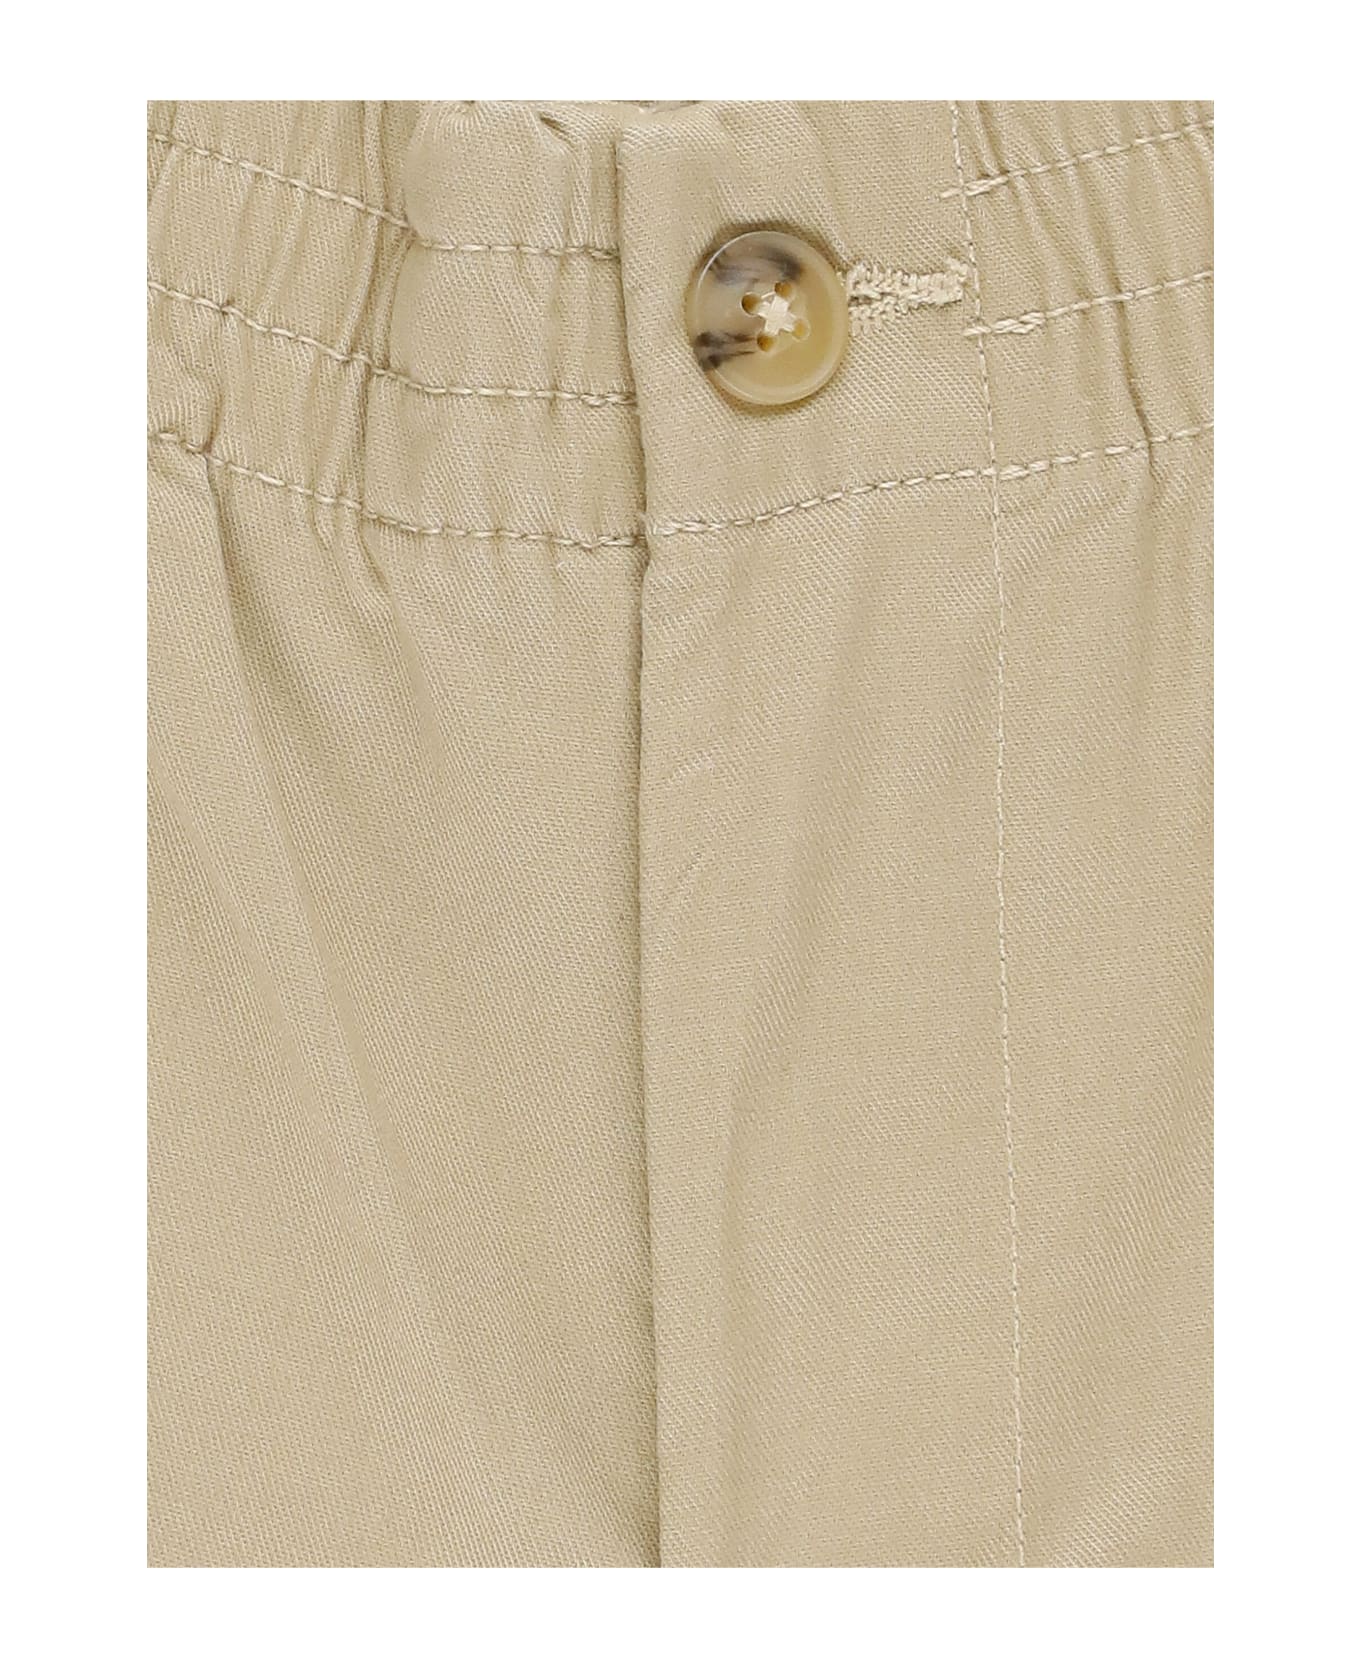 Ralph Lauren Pants With Logo - Beige